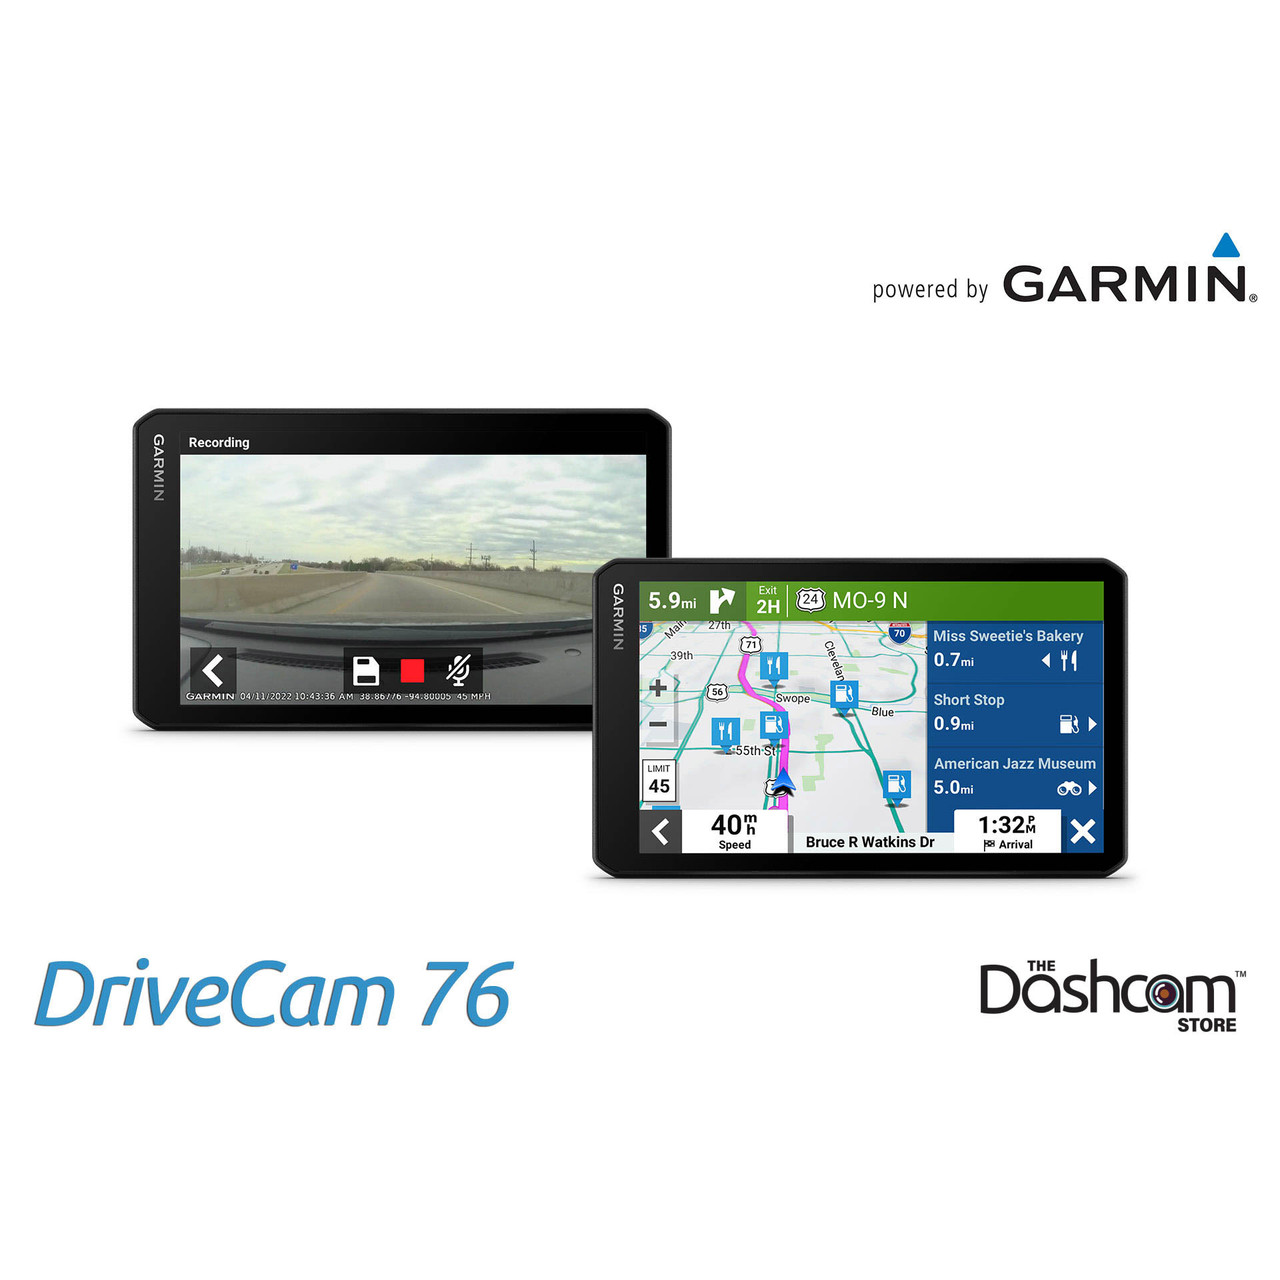 hellige Jernbanestation højen Buy Garmin DriveCam 76 GPS Navigator w/ Built-in Dash Cam